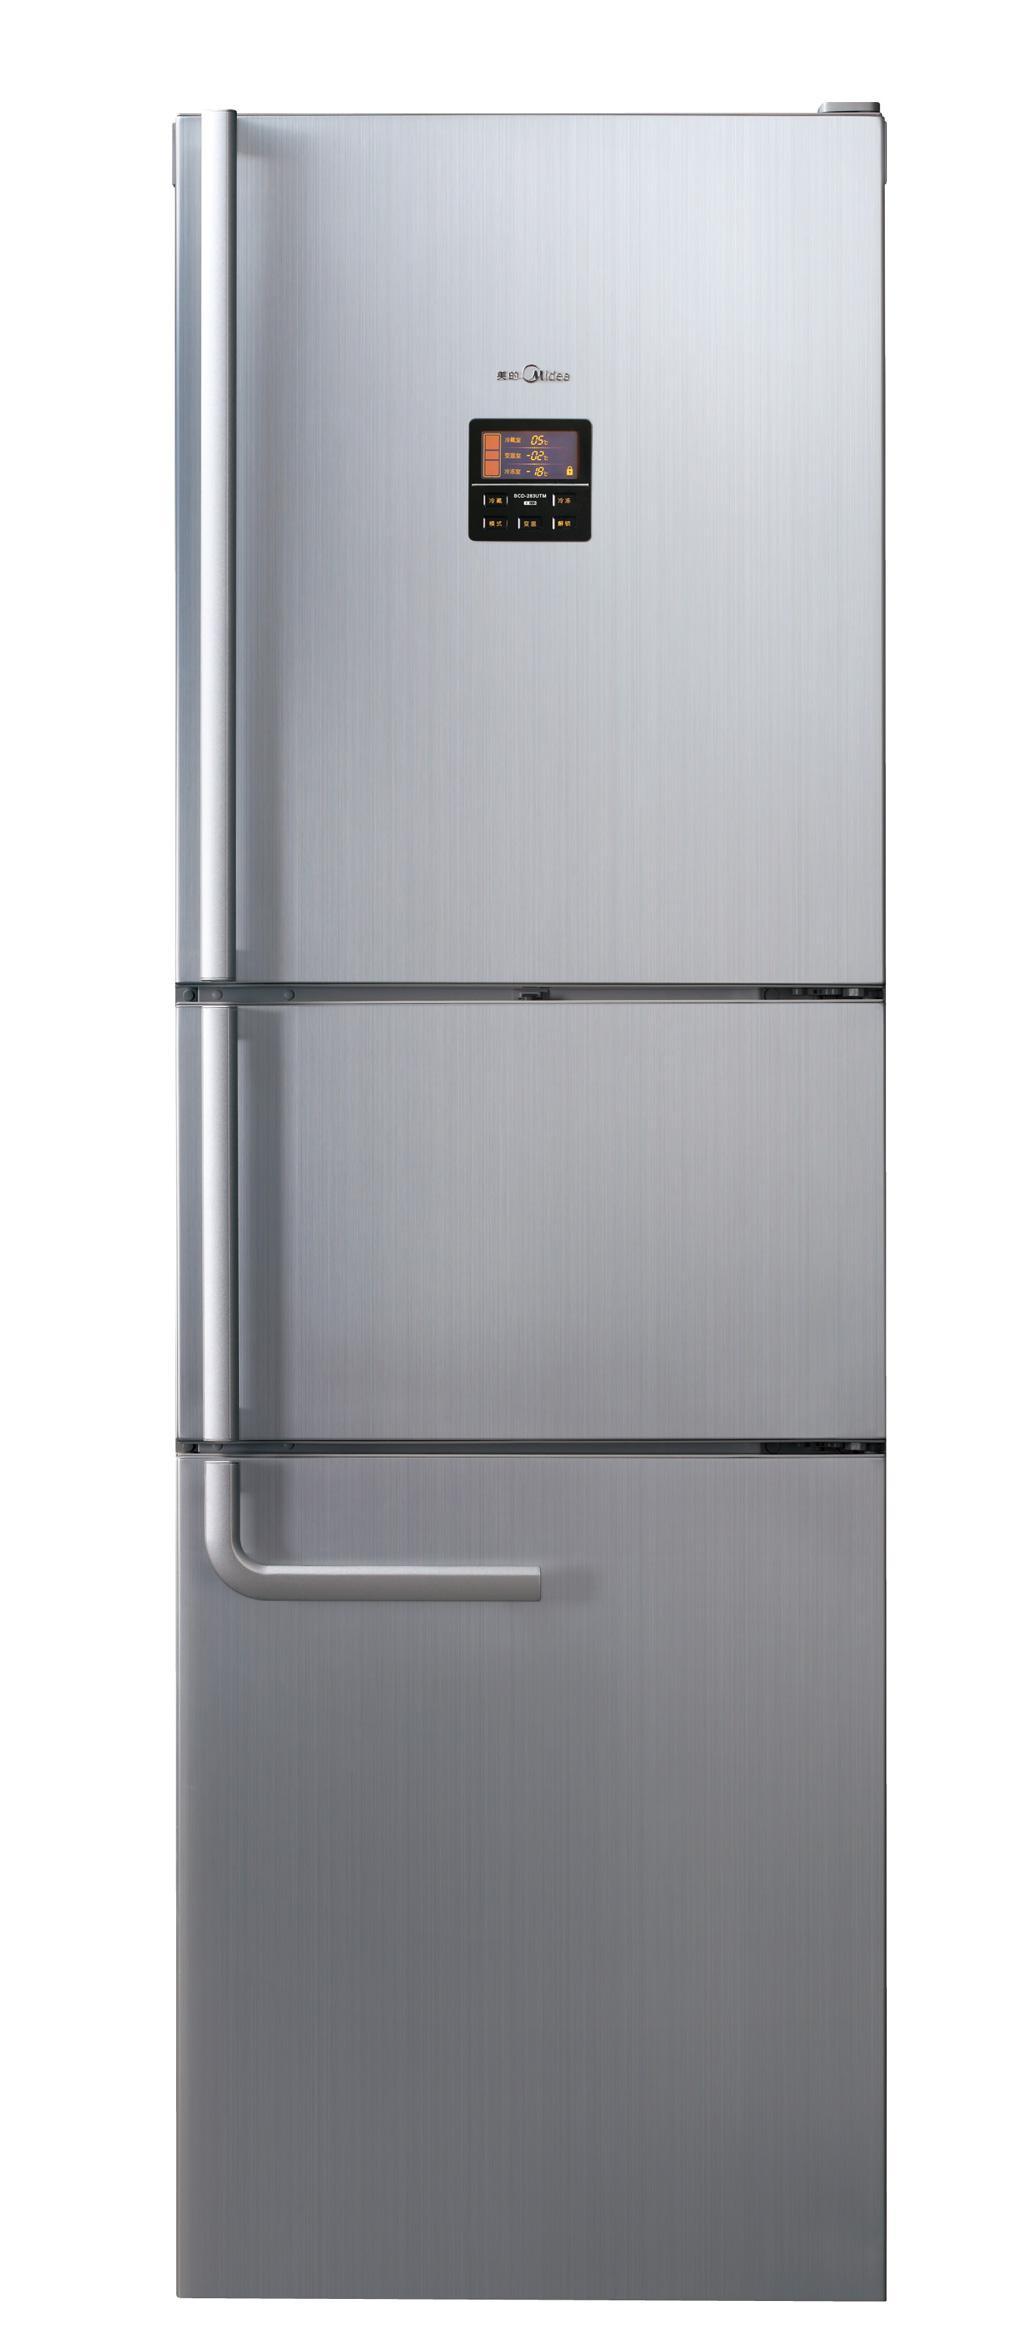 美的BCD-228UTM冰箱产品价格_图片_报价